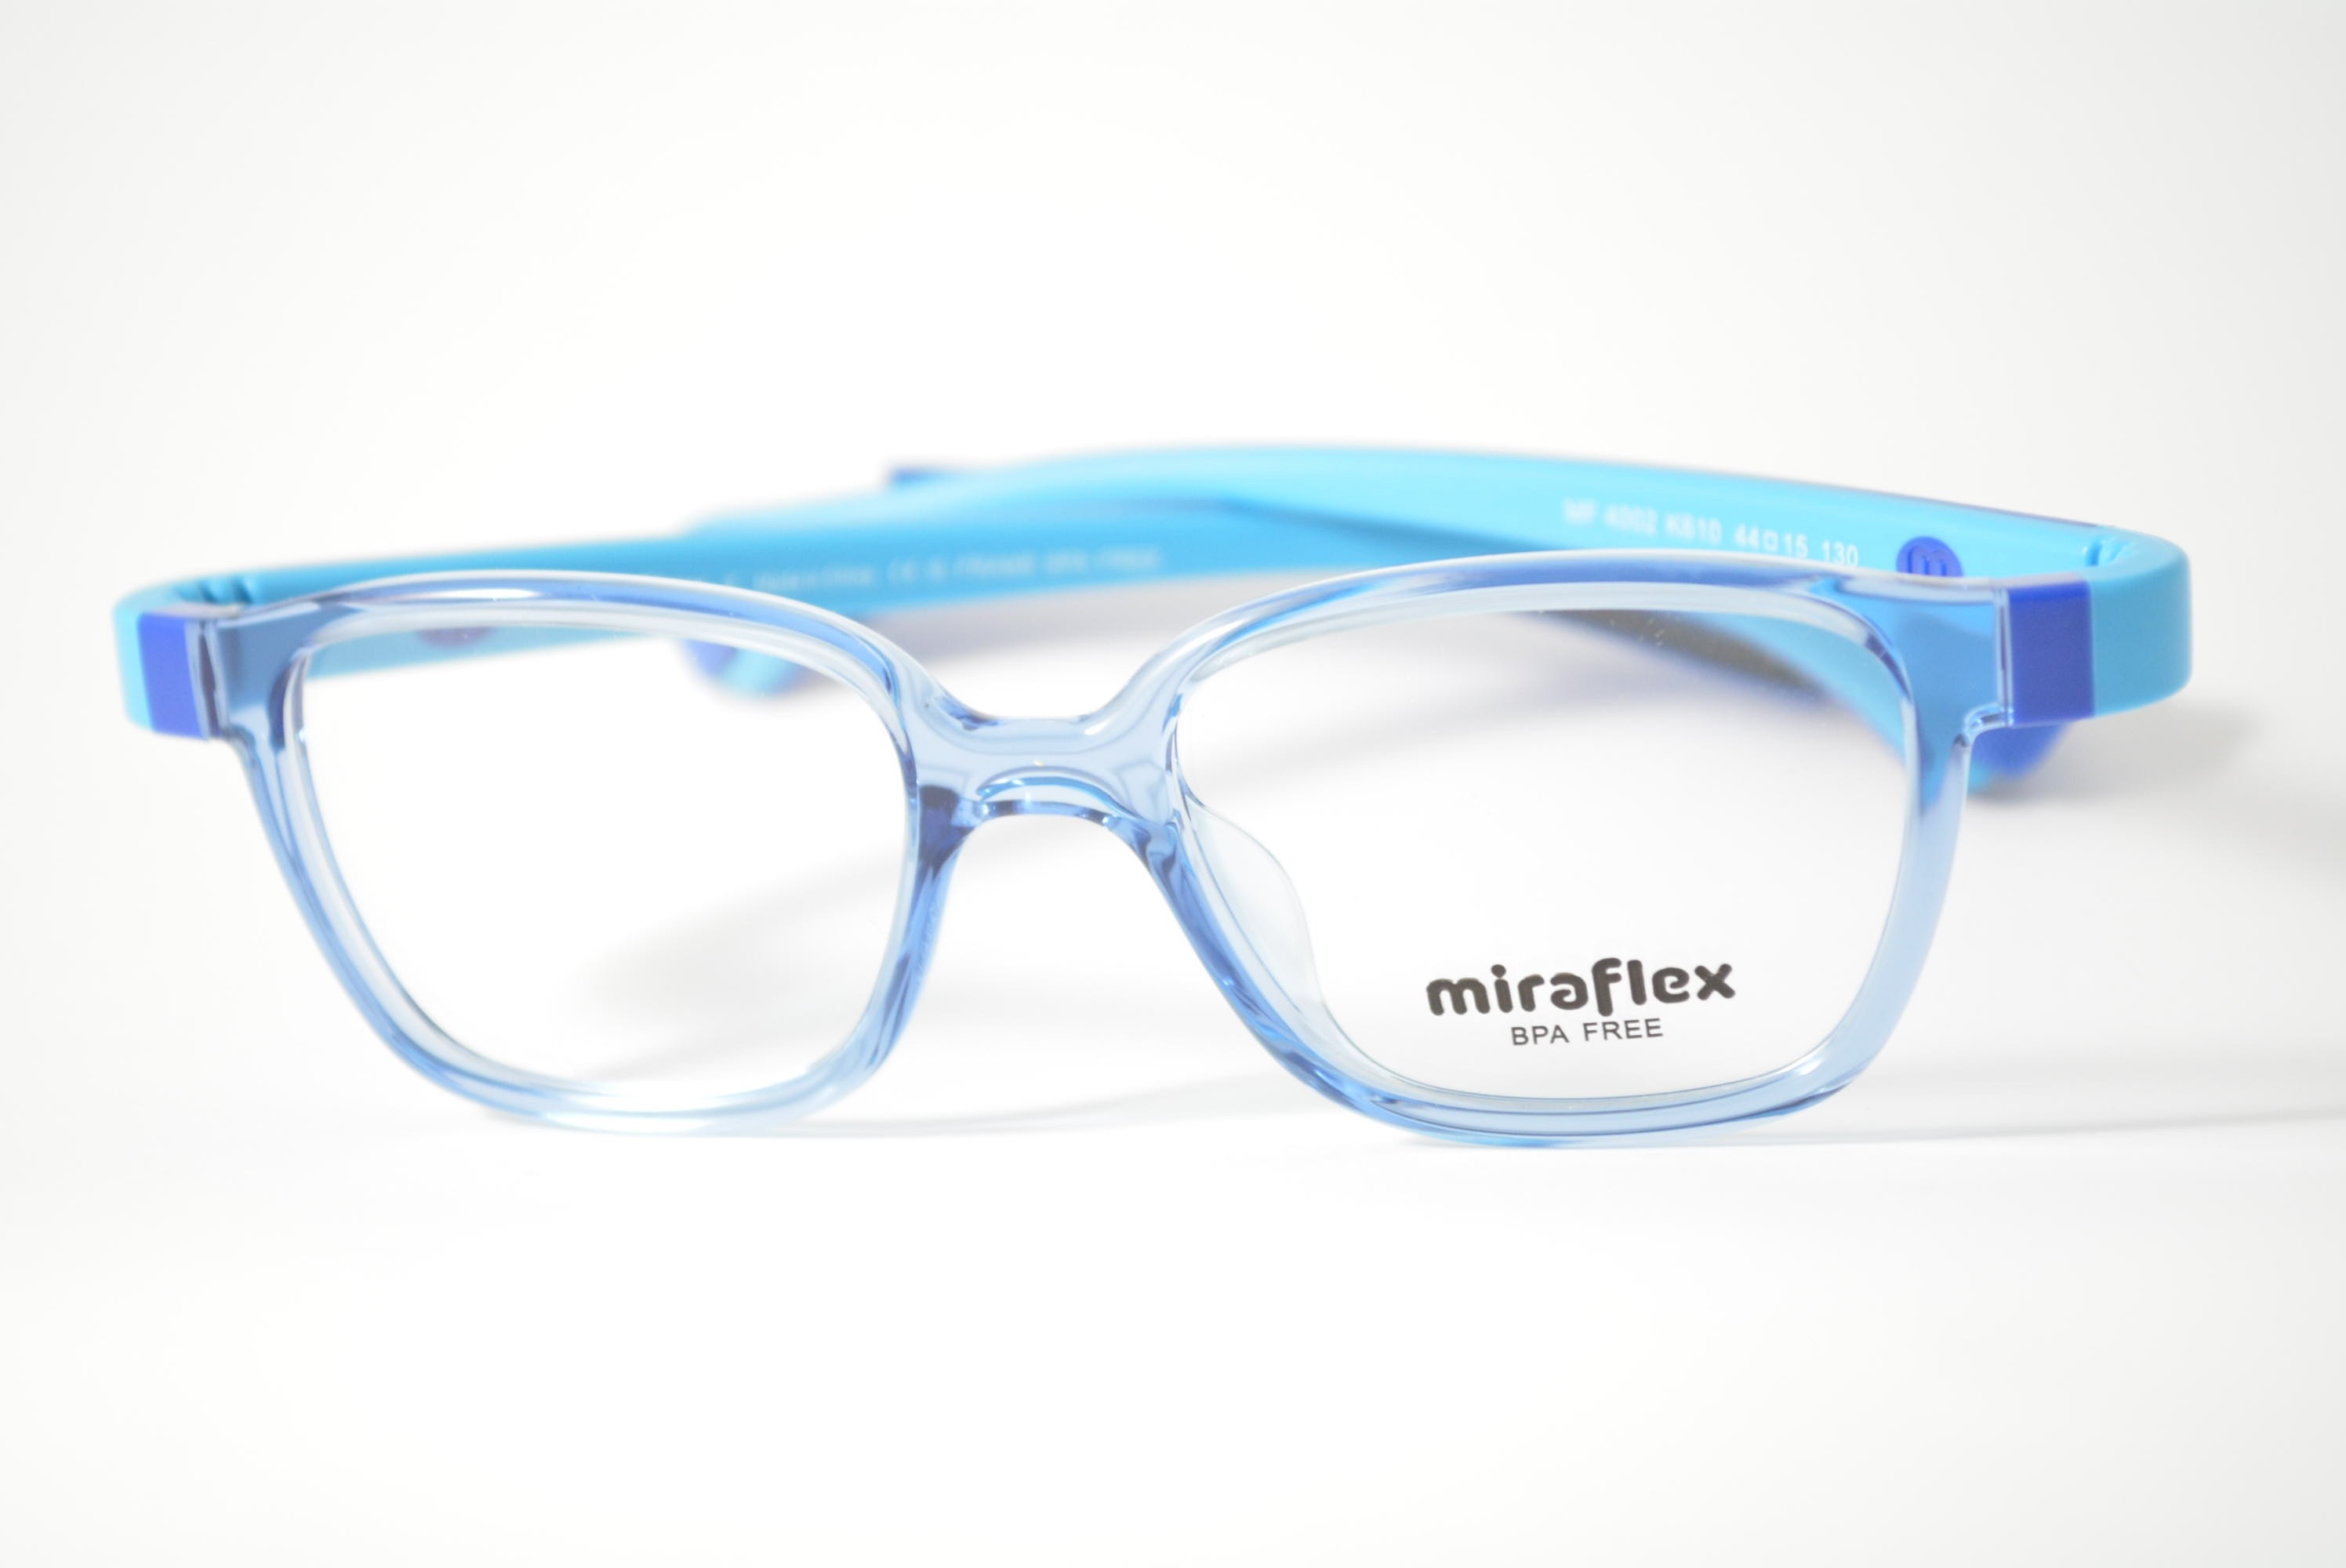 armação de óculos Miraflex mod mf4002 k610 44